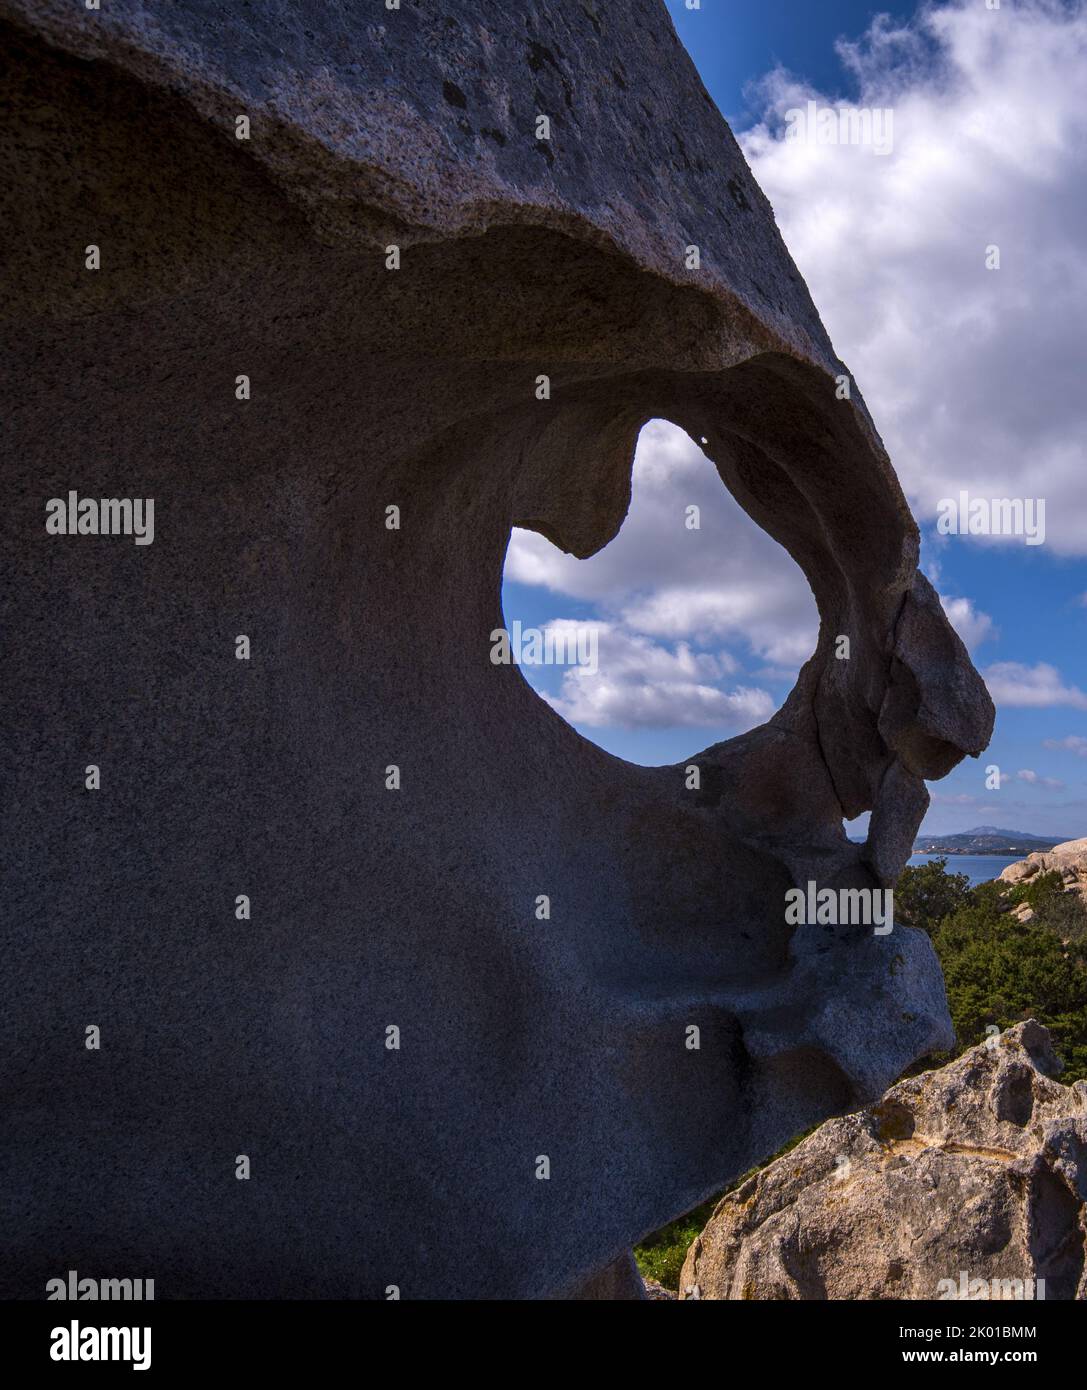 Sardegna, Caprera, rocce sul mare Stock Photo